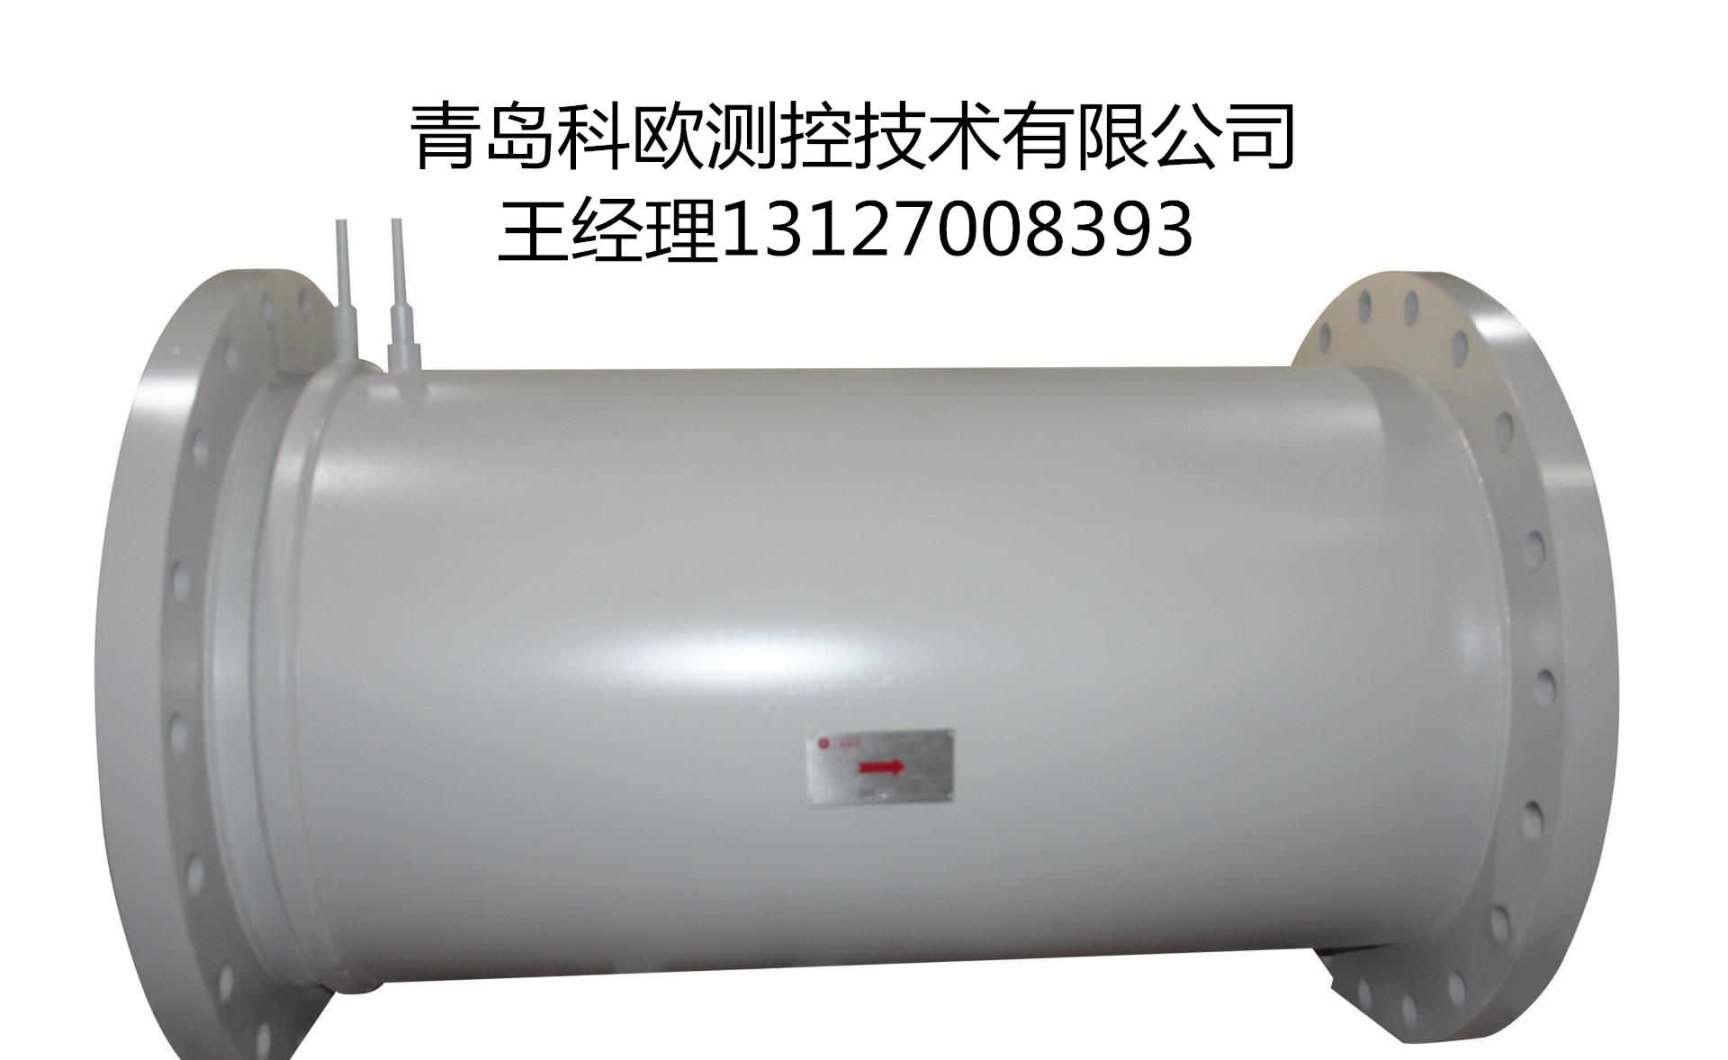 DN350高温水流量计,化工厂蒸汽V锥流量计规格